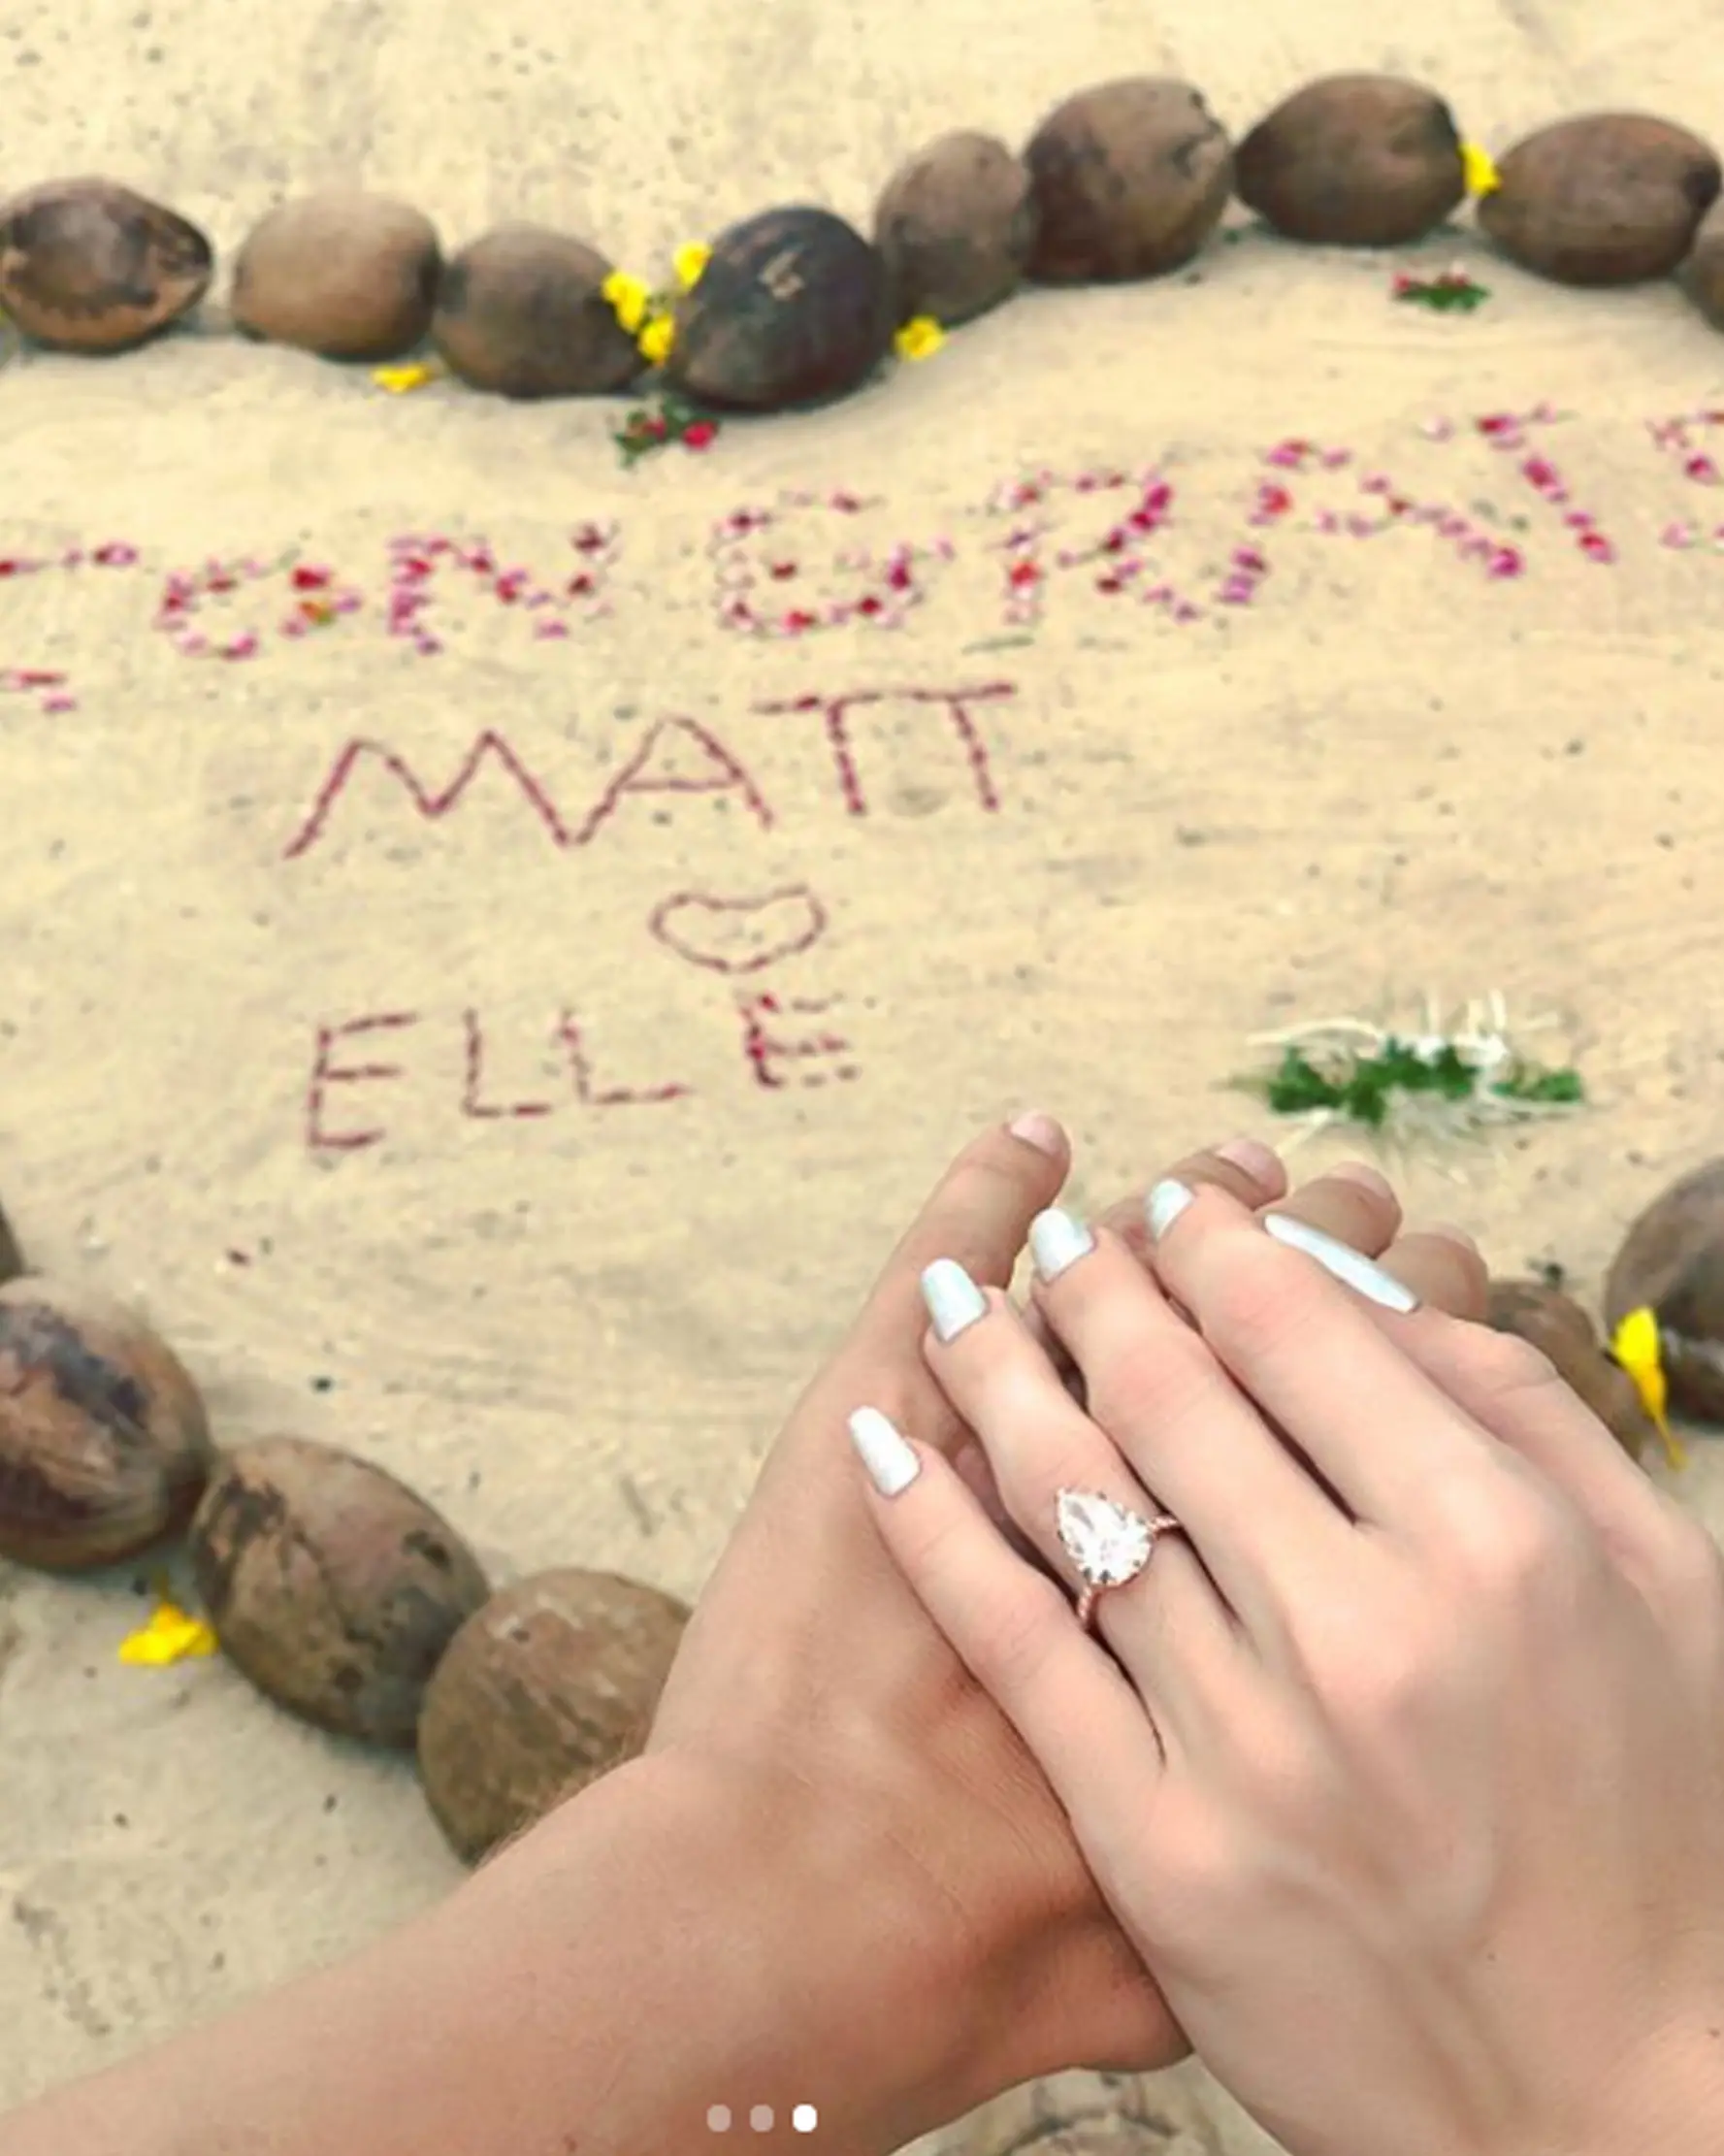 Elle Evans mengungah foto menunjukkan jari manisnya melingkar sebuah cincin cantik. Elle Evans telah mengumumkan pertunangannya dengan Matt Bellamy. (Instagram)